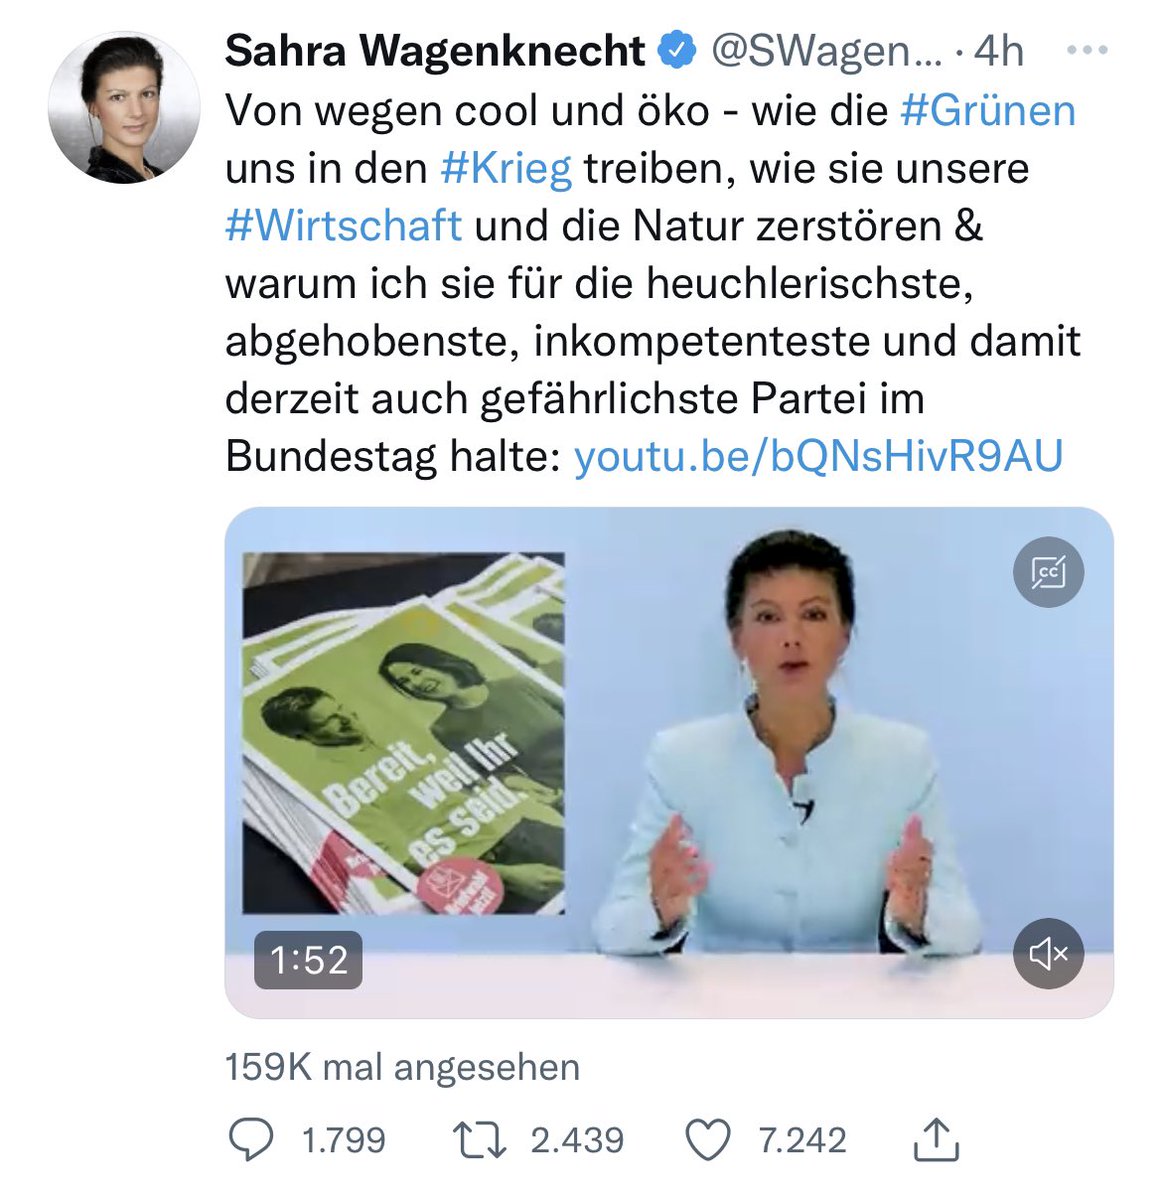 Sahra #Wagenknecht bezeichnet die #Grünen - eine demokratische(!) Partei, als die gefährlichste im Bundestag, während Rechtsextremisten in unserem Parlament sitzen. Der politische Wertekompass dieser Frau ist vollkommen vorbei an der Realität.